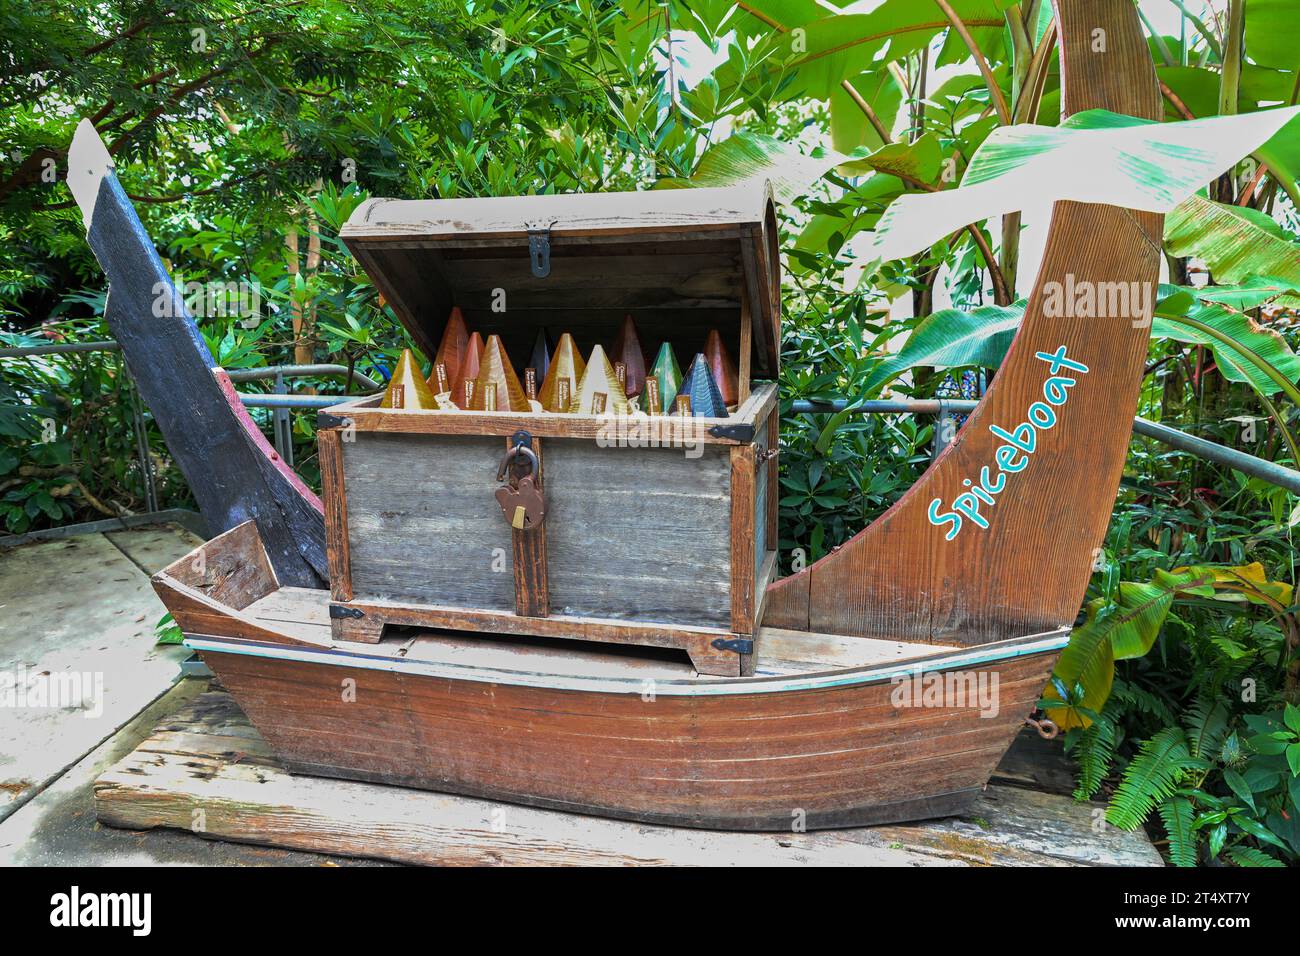 Un bateau à épices à l'intérieur du biome de la forêt tropicale à l'Eden Project, une attraction touristique près de St Austell, Cornouailles, Angleterre, Royaume-Uni Banque D'Images